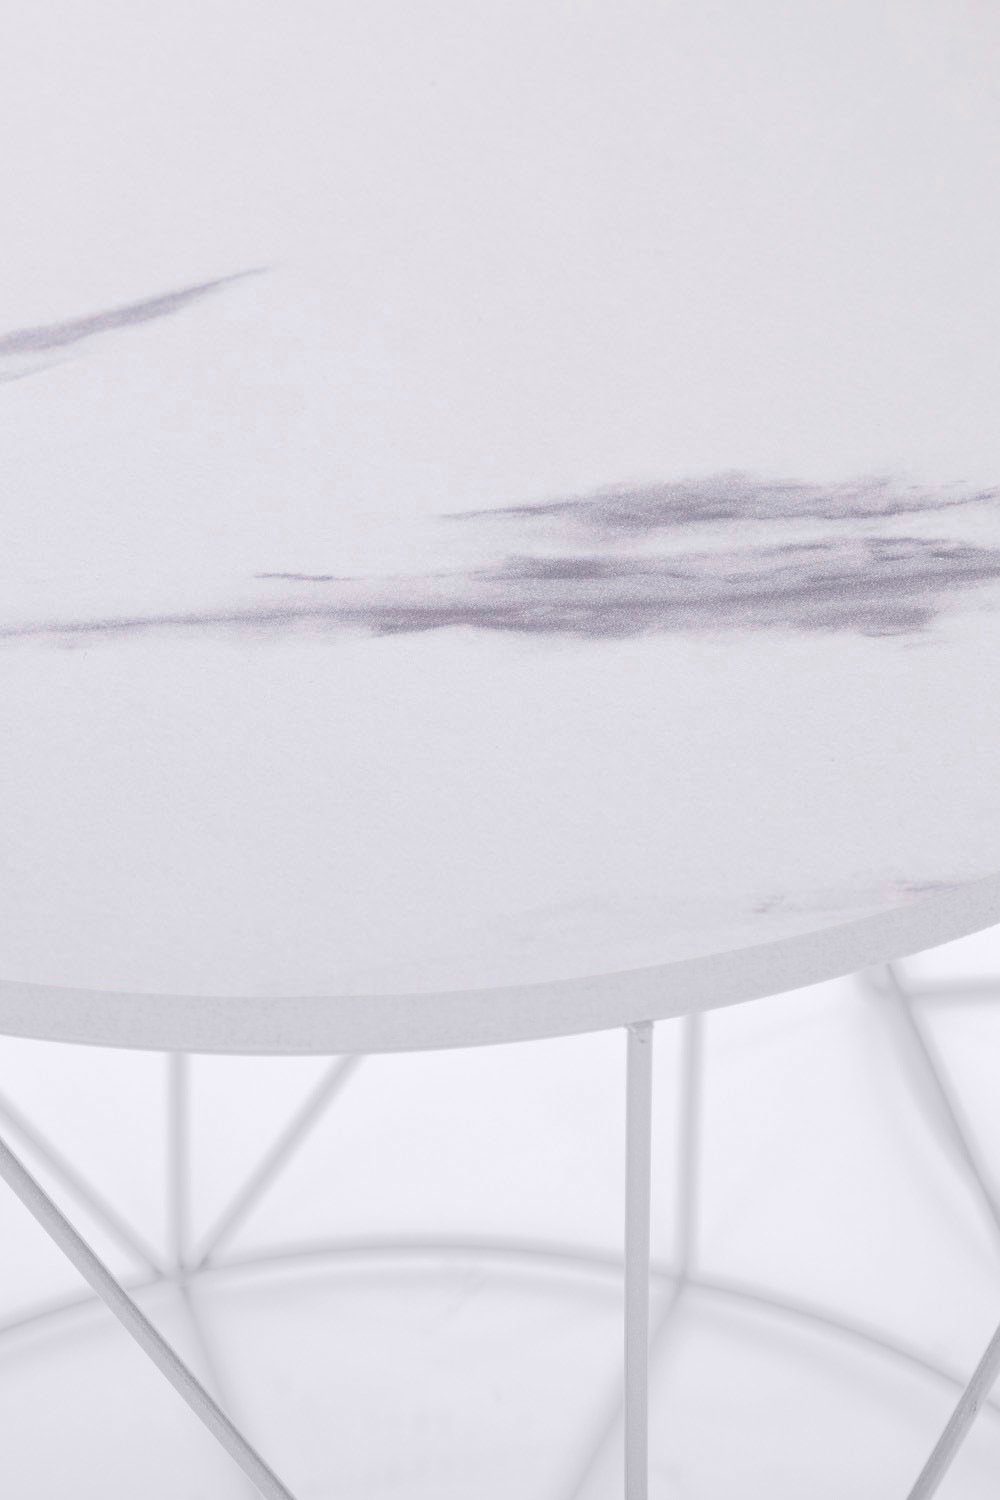 Weiß/Marmor | Weiß Naturbelassene Design lackiertem Gestell, Weiß Beistelltisch Rundini, im Skandinavischem Platte | my Flair Design